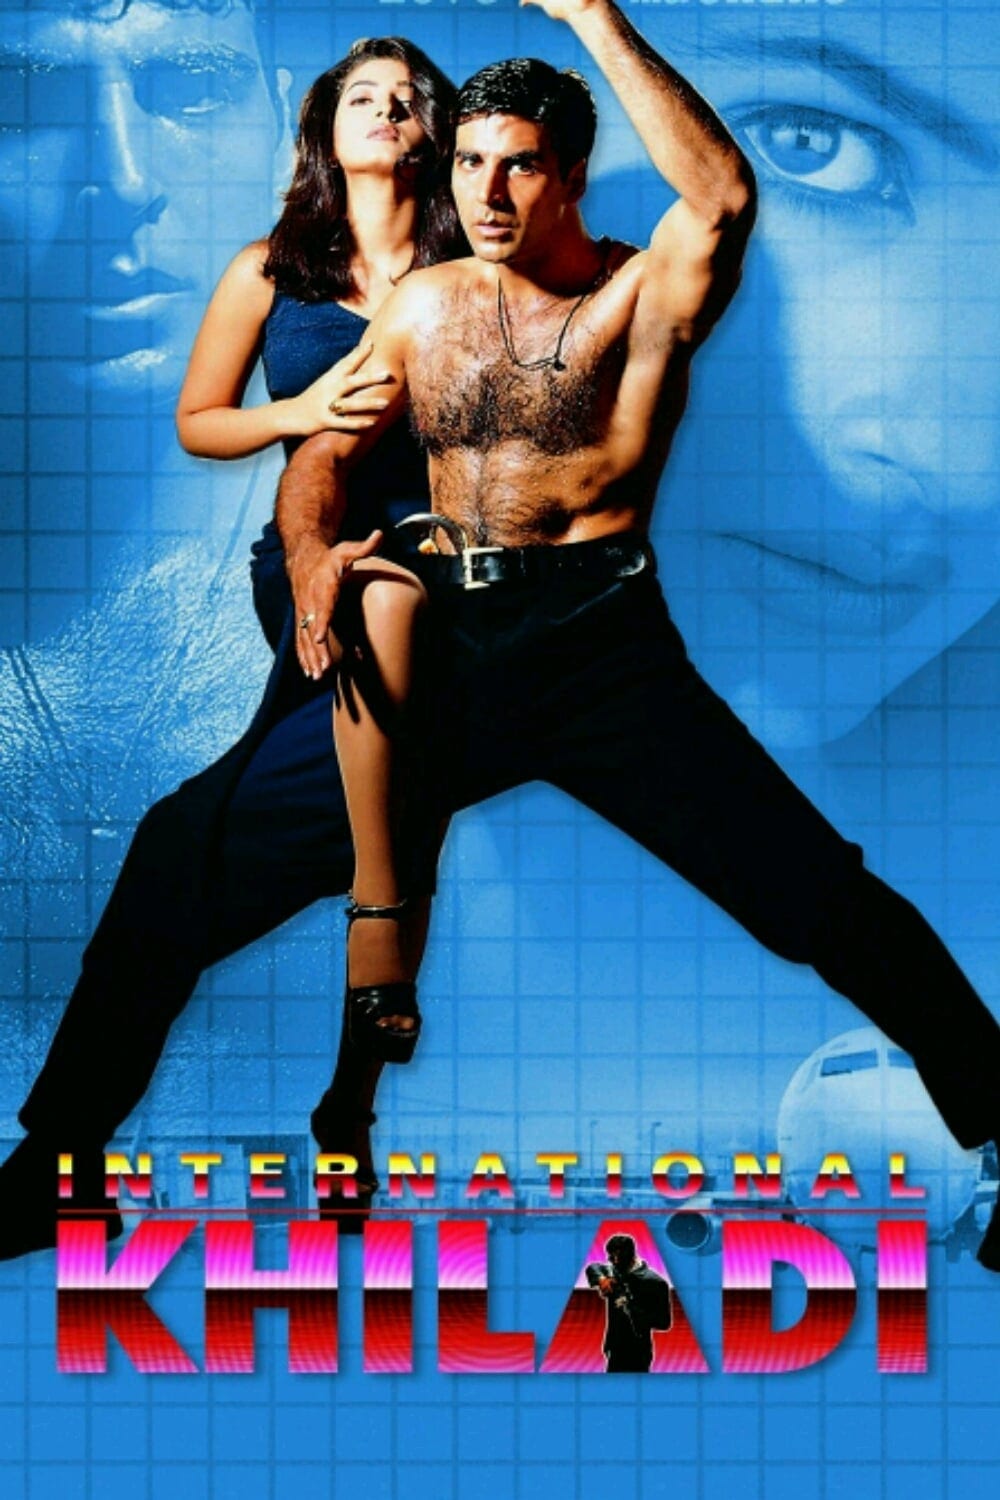 Poster for the movie "International Khiladi"